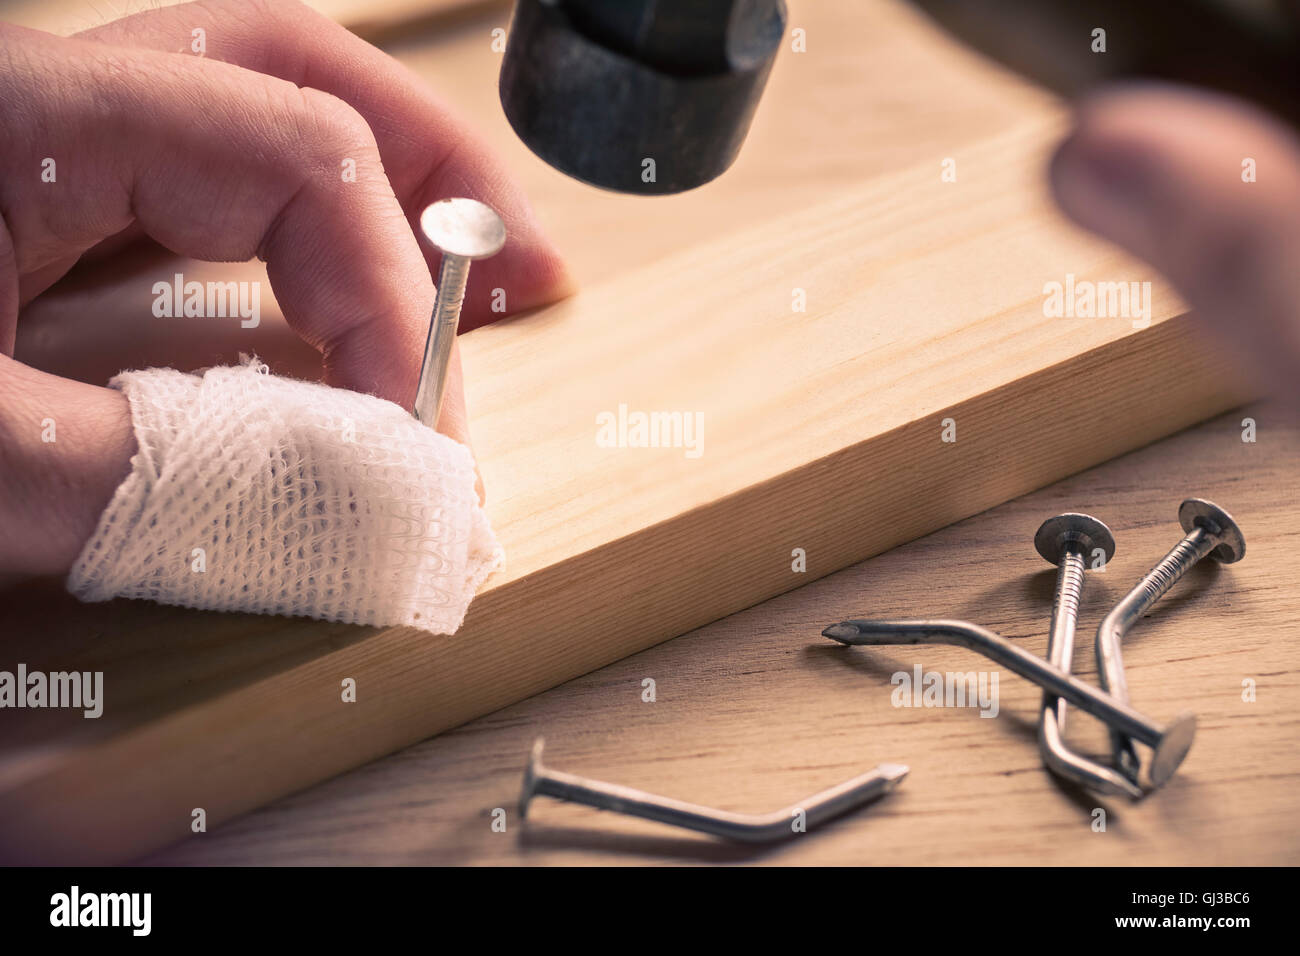 Bandaged finger holding nail on wood Stock Photo